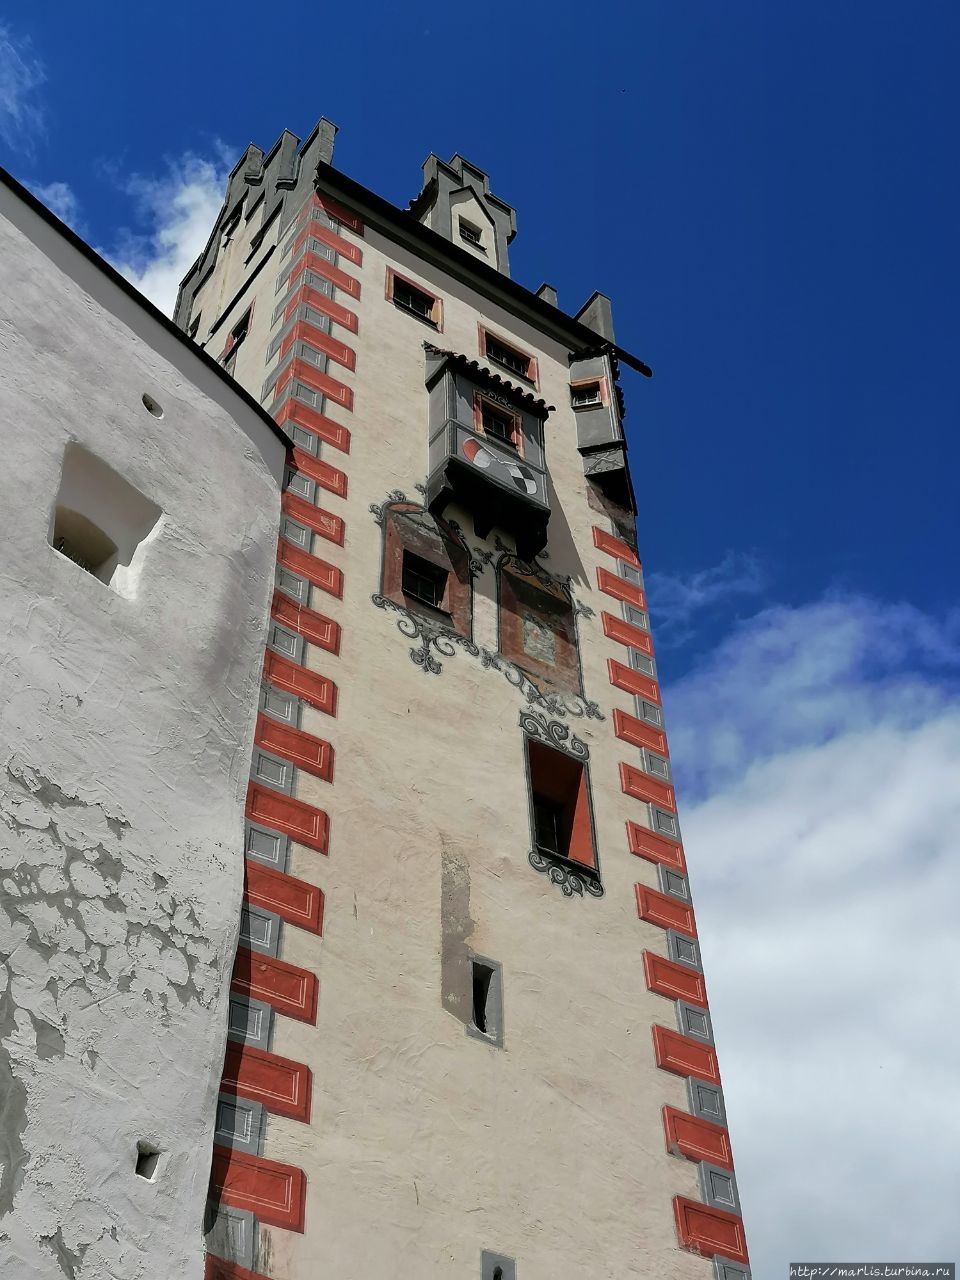 Высокий Замок Фюссен, Германия